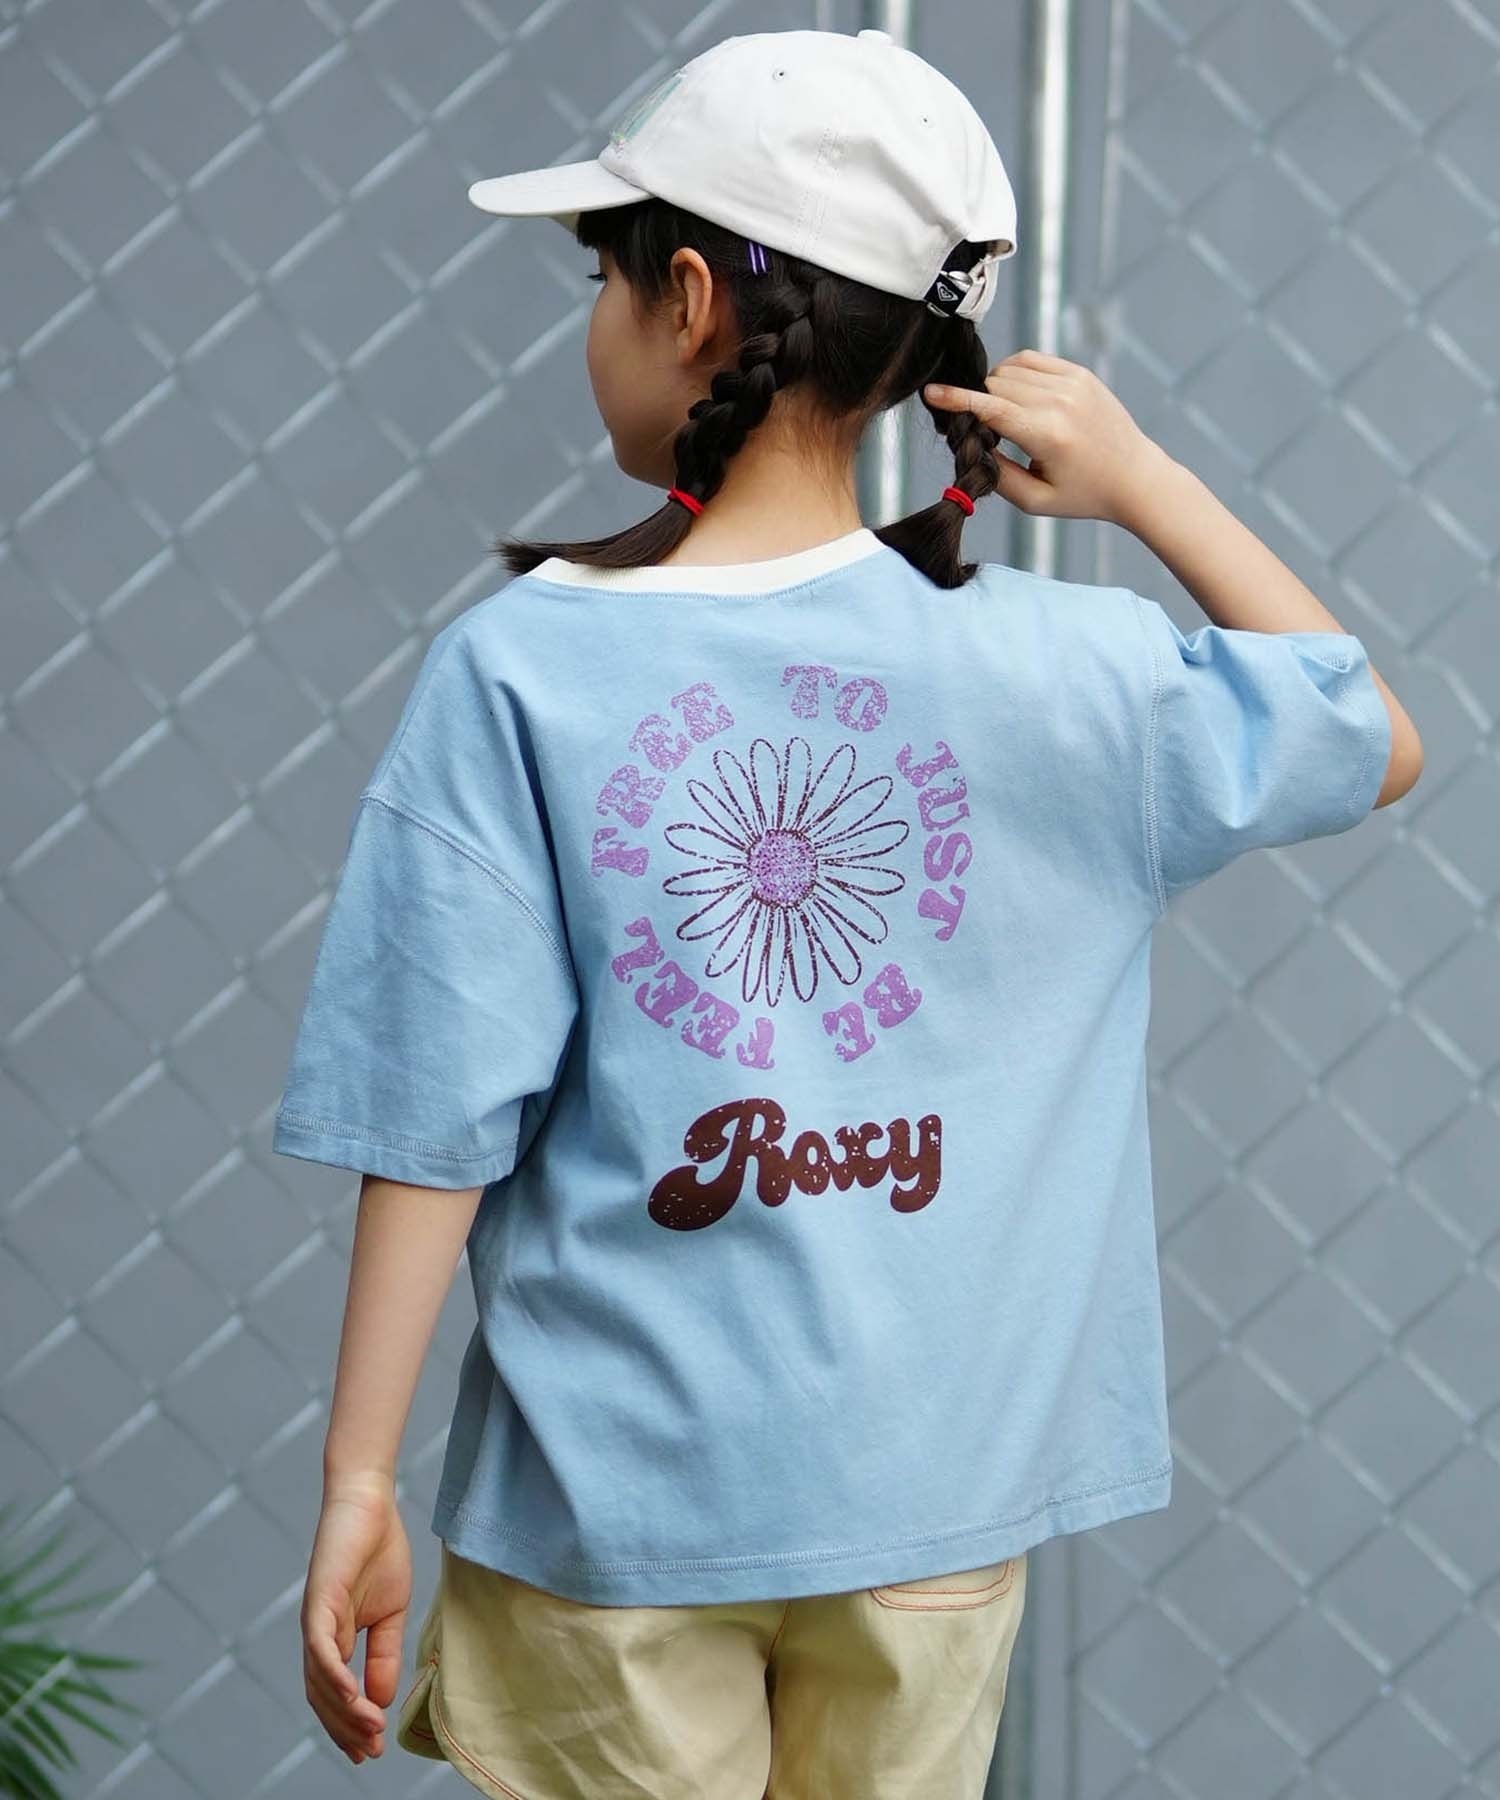 【クーポン対象】ROXY ロキシー MINI FEEL FREE ミニ フィール フリー キッズ Tシャツ 親子コーデ TST241117(OWT-130cm)